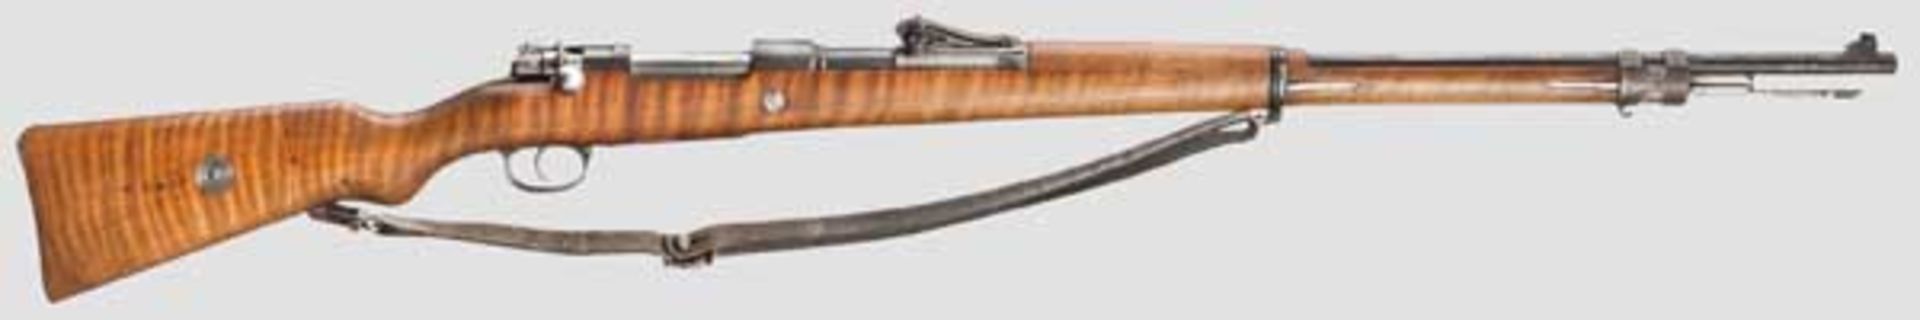 Gewehr 98, Erfurt, 1916 Kal. 8 x 57, Nr. 1235b. Nummerngleich inkl. Schrauben. Spiegelblanker